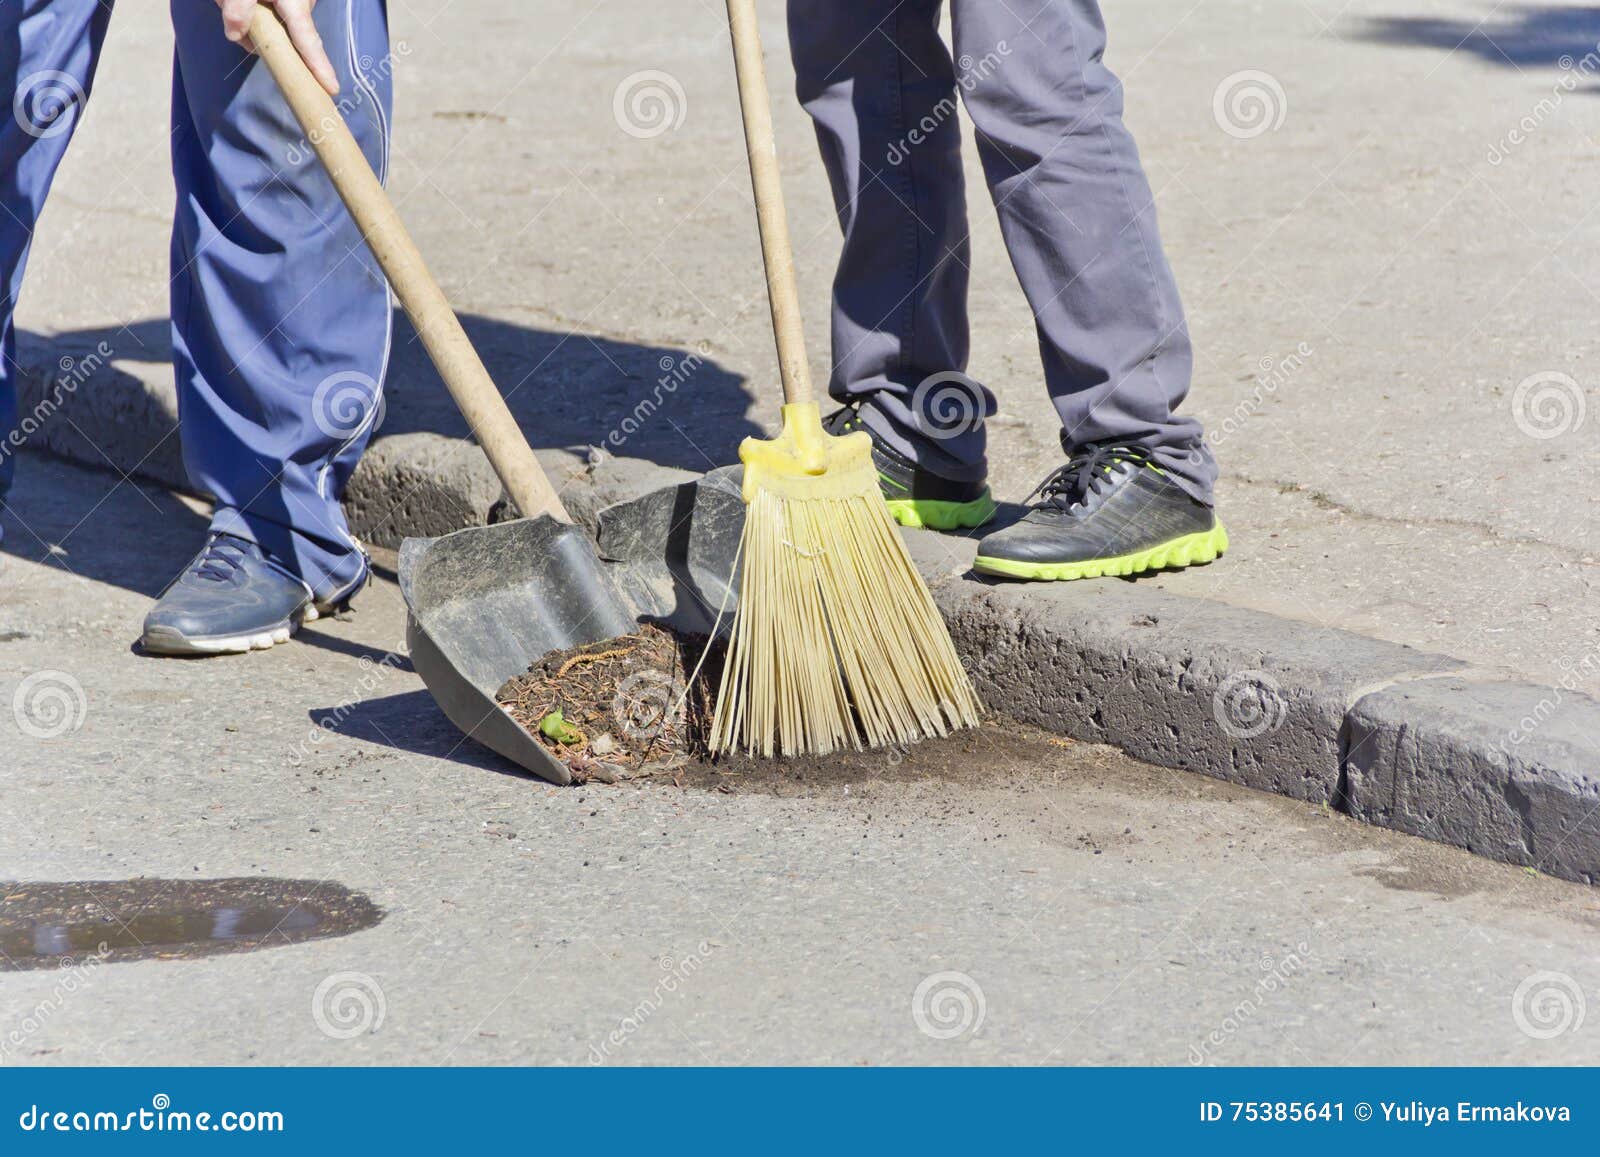 Общественные работы что делают. Метла для уборки. Метелка и лопата. Обязательные общественные работы. Метла для уборки улиц.